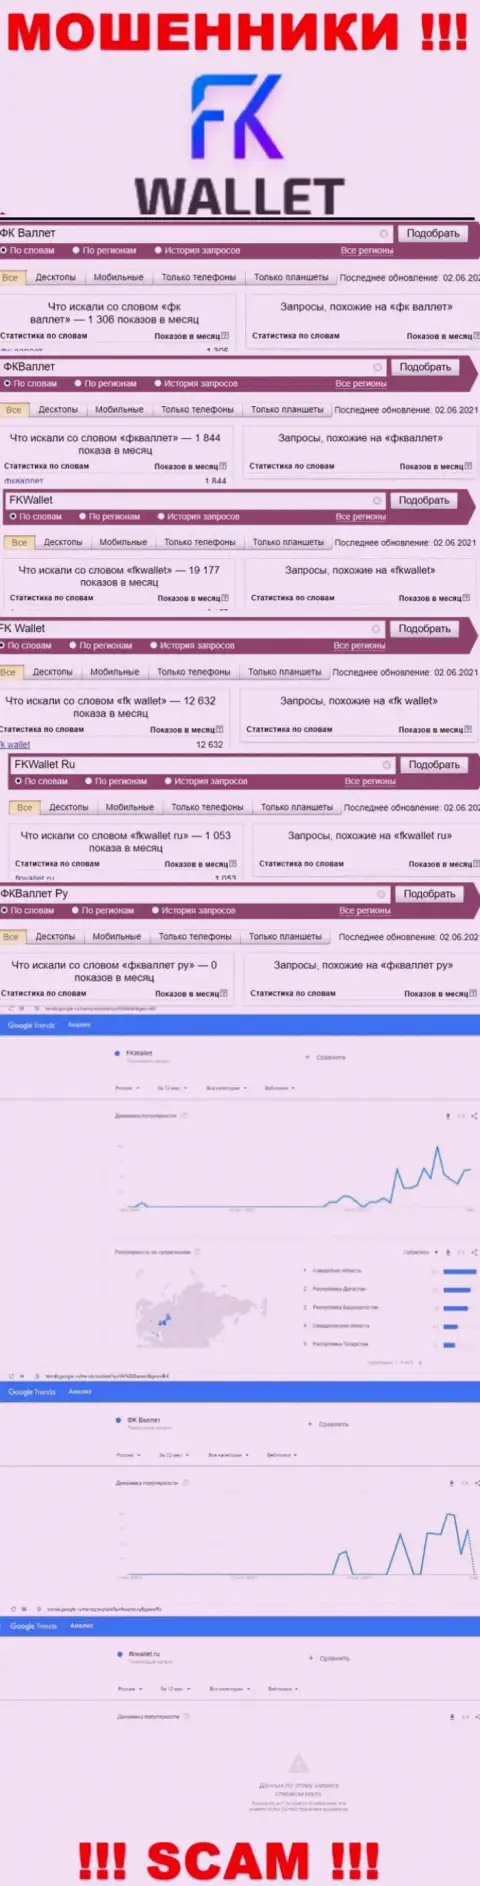 Скрин статистических сведений онлайн-запросов по неправомерно действующей конторе FKWallet Ru